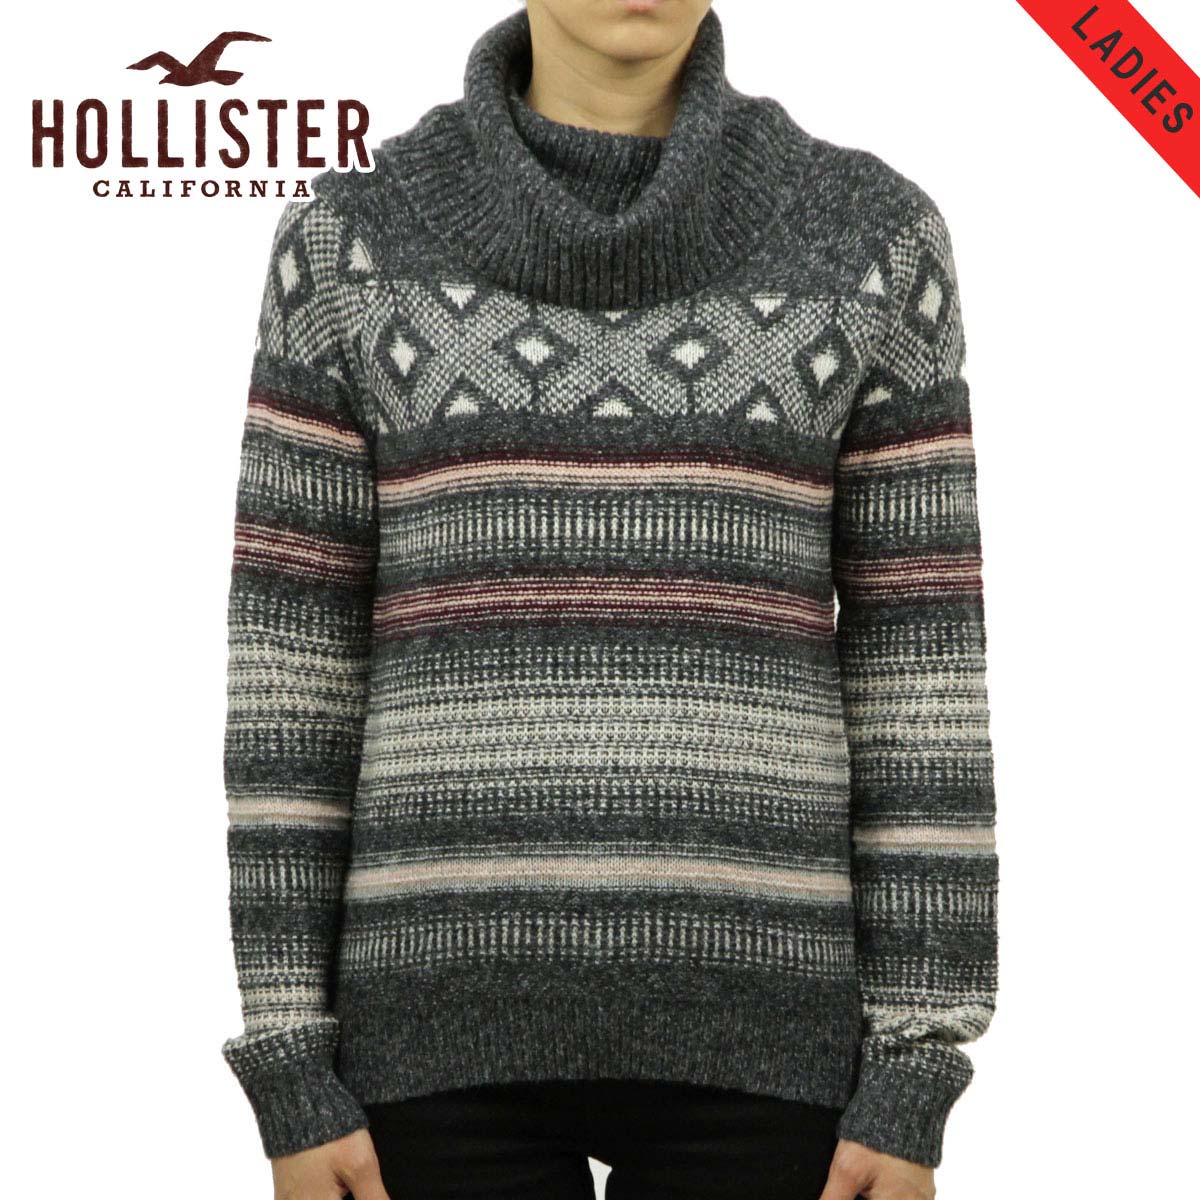 ホリスター セーター レディース 正規品 HOLLISTER Patterned Cowl Neck Sweater 350-507-0558-116 D20S30 父の日 プレゼント ラッピング